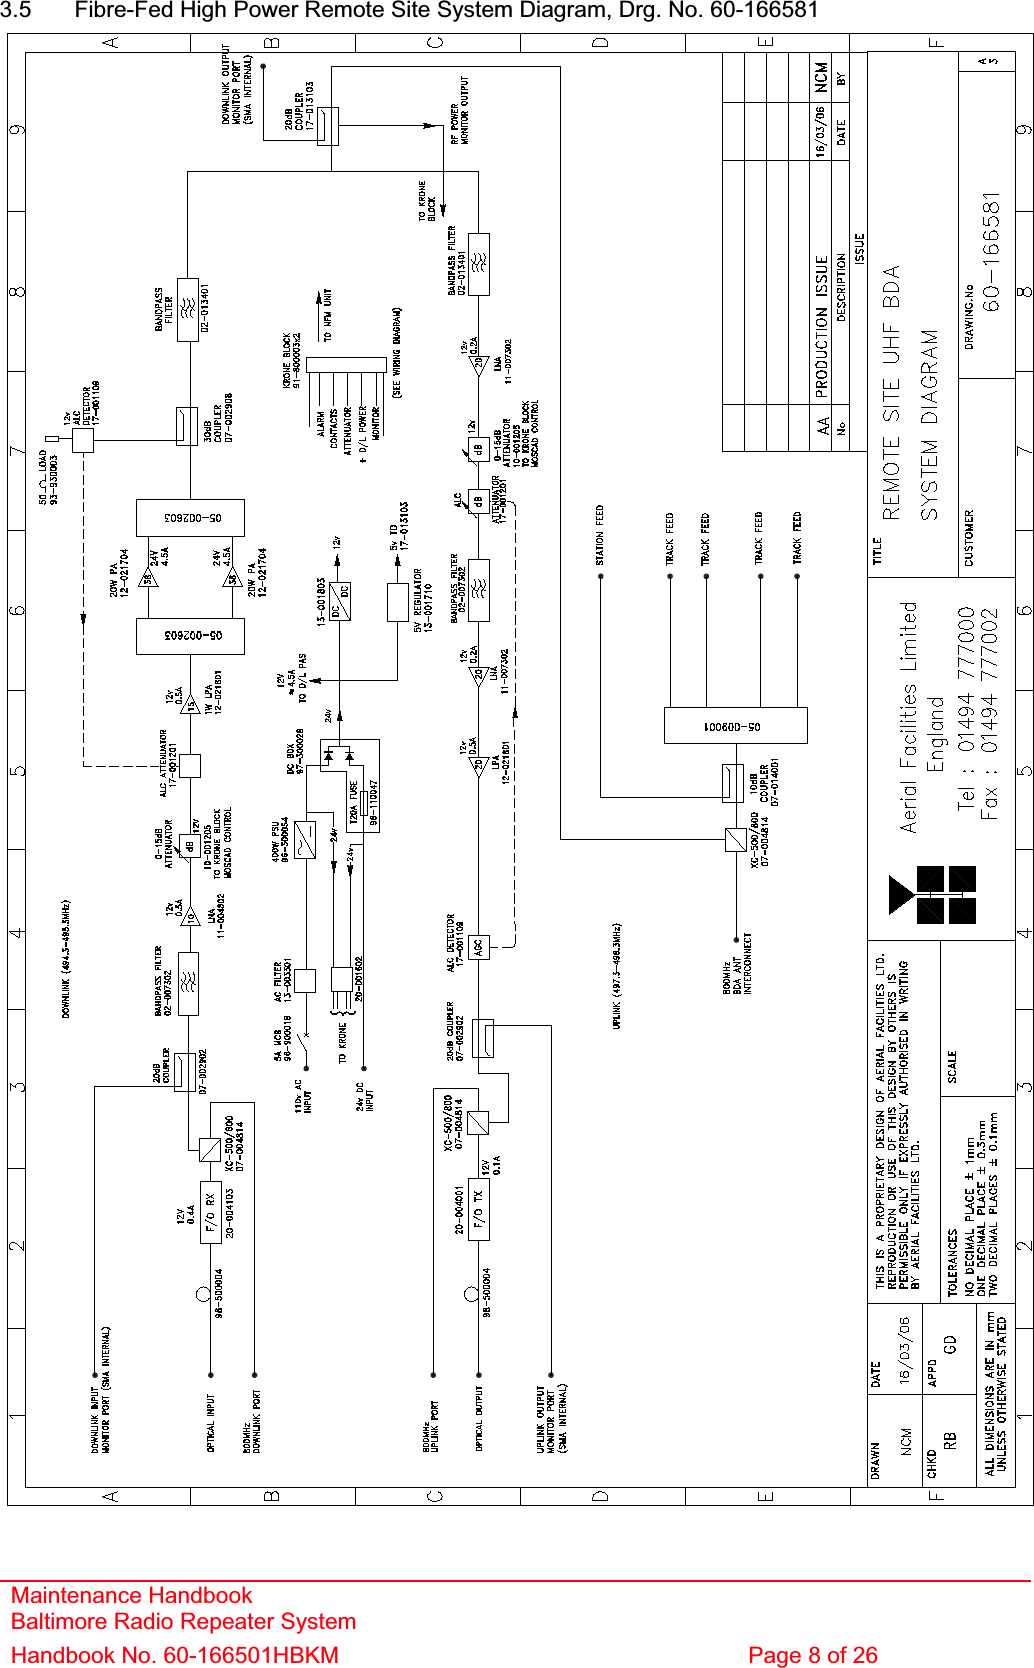 3.5  Fibre-Fed High Power Remote Site System Diagram, Drg. No. 60-166581Maintenance Handbook Baltimore Radio Repeater System Handbook No. 60-166501HBKM  Page 8 of 26 